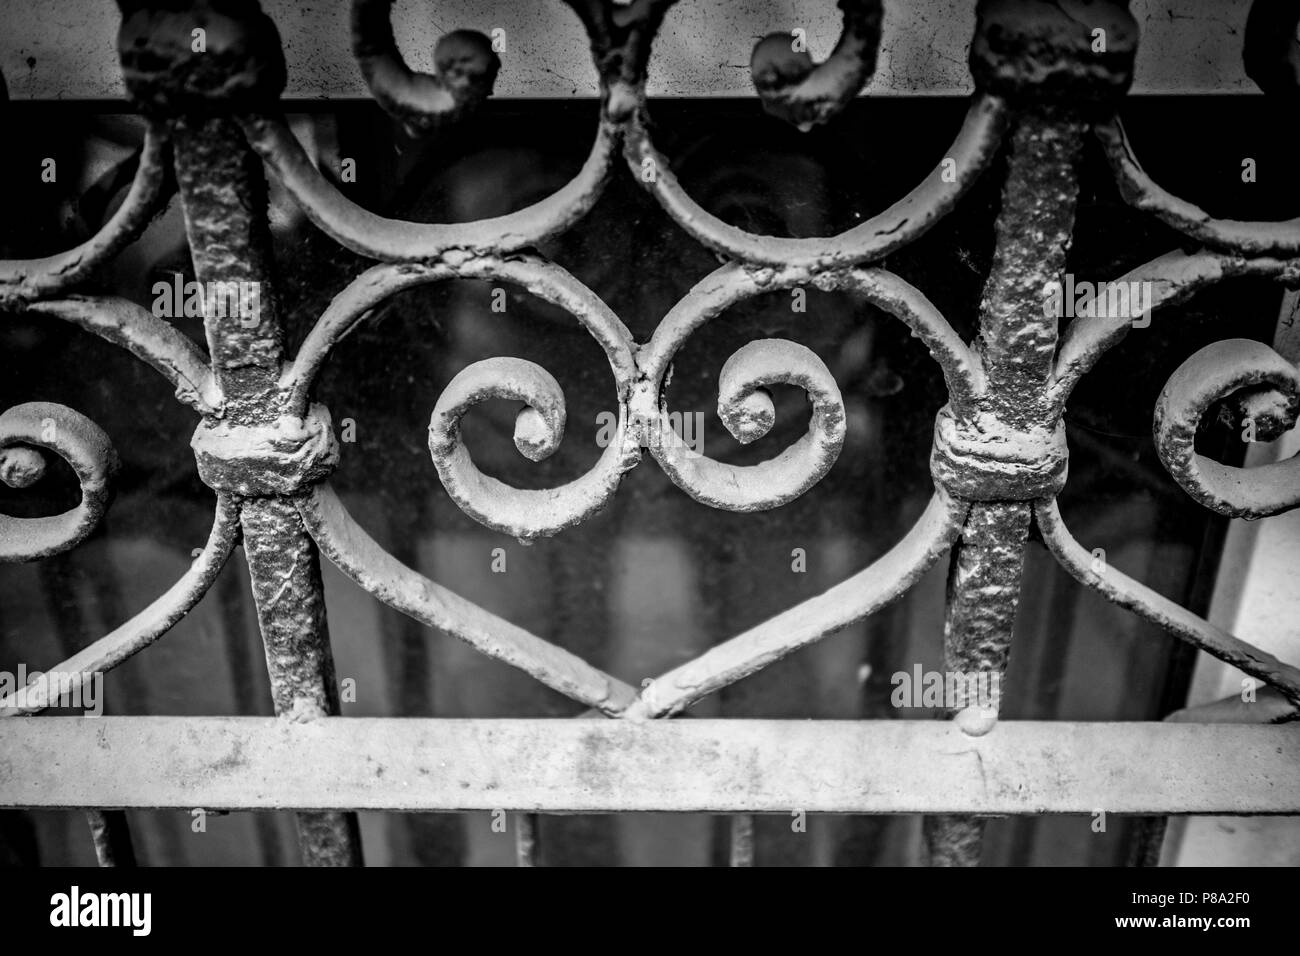 Staubige metallische Form, das Zeichen der Liebe von toreutics, Schmiedeeisen, Teil der Diebstahl schutz Raster von Keller Fenster in der Innenstadt von Sofia, Bulgarien Stockfoto